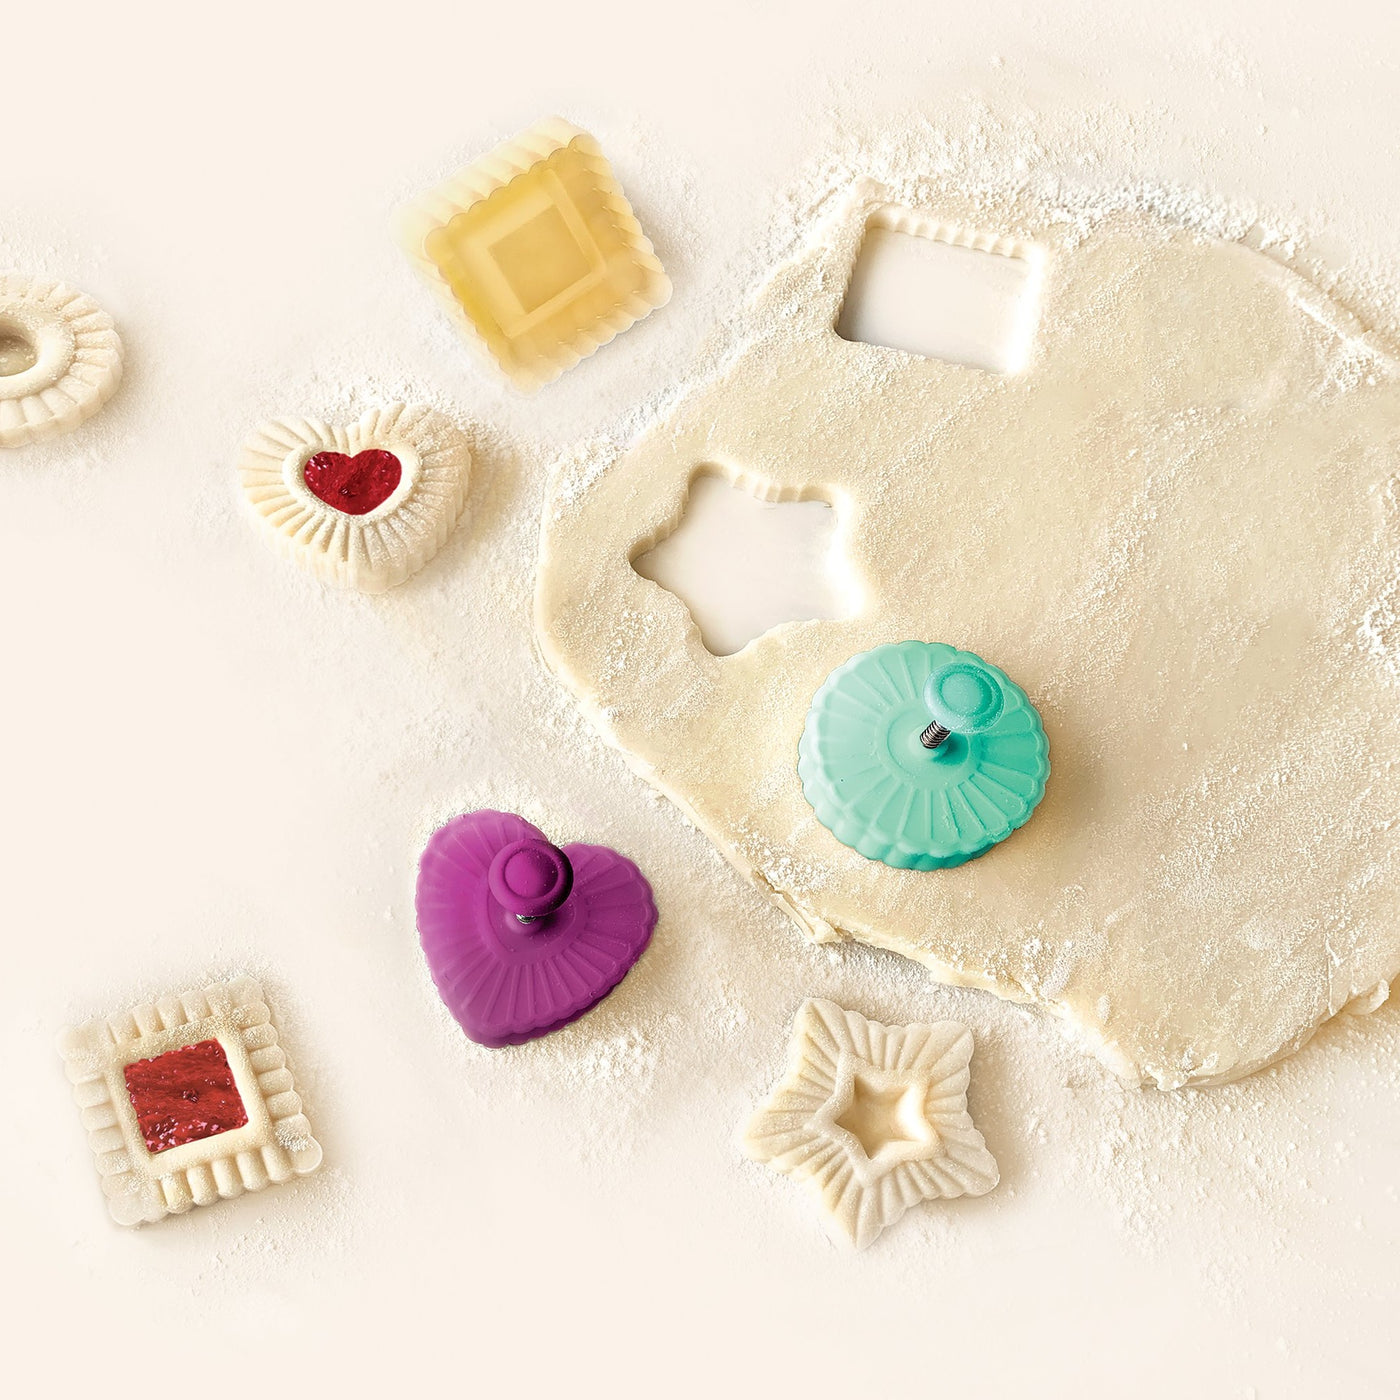 Heart Cookie Cutter Set - 6 Piece - 3 4/5 inch, 3 1/5 inch, 2 4/5 inch, 2 3/5 inch, 2 1/5 inch, 1 4/5 inch - Heart Shaped Cookie Cutters, Stainless